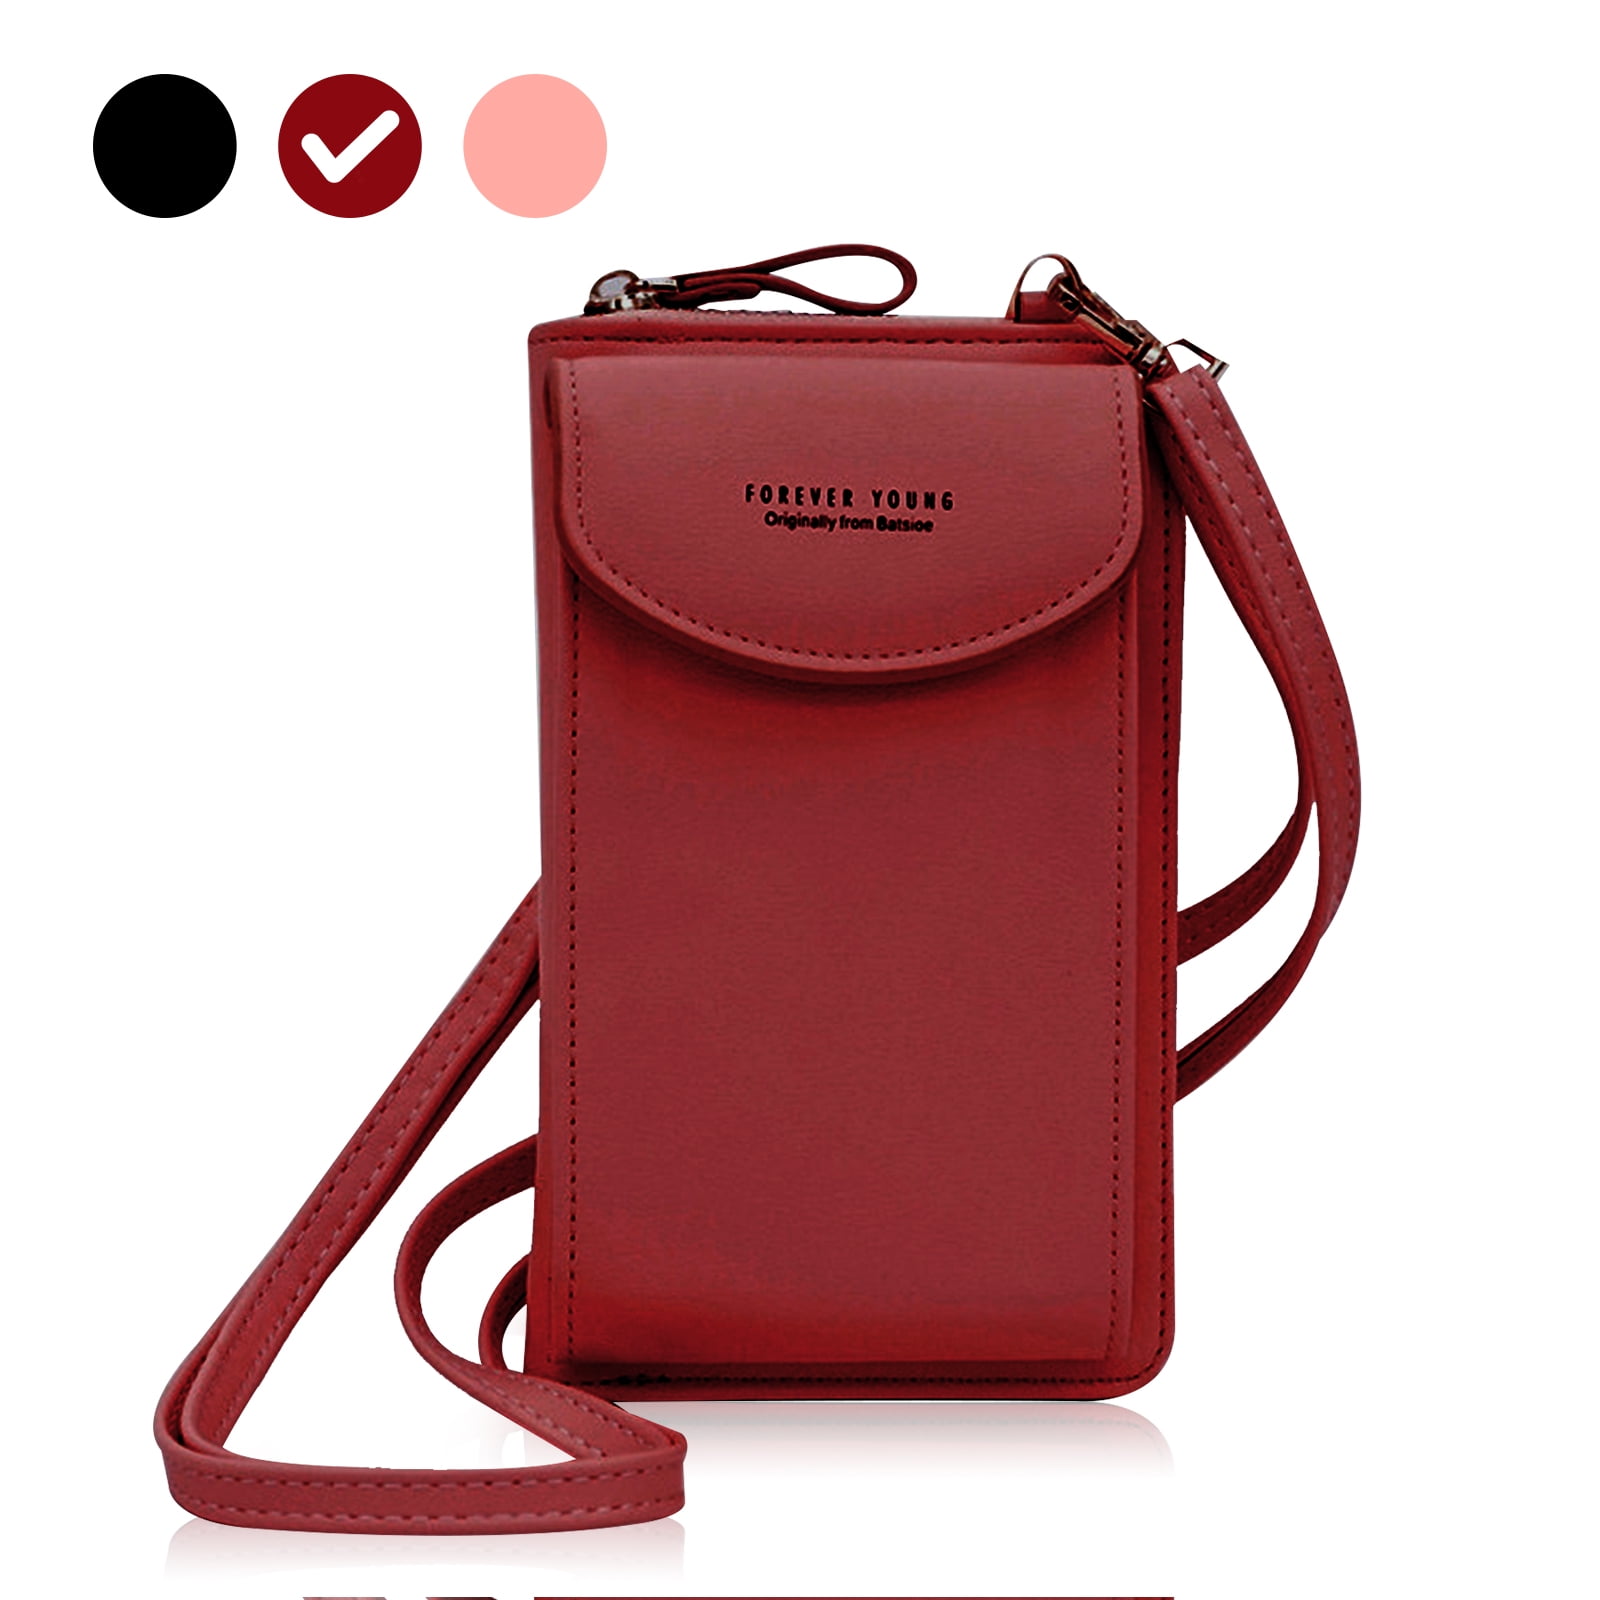 Women Fashion Wrist Bag Nylon Crossbody Bag 3 Layers Wallet Cellphone Pouch